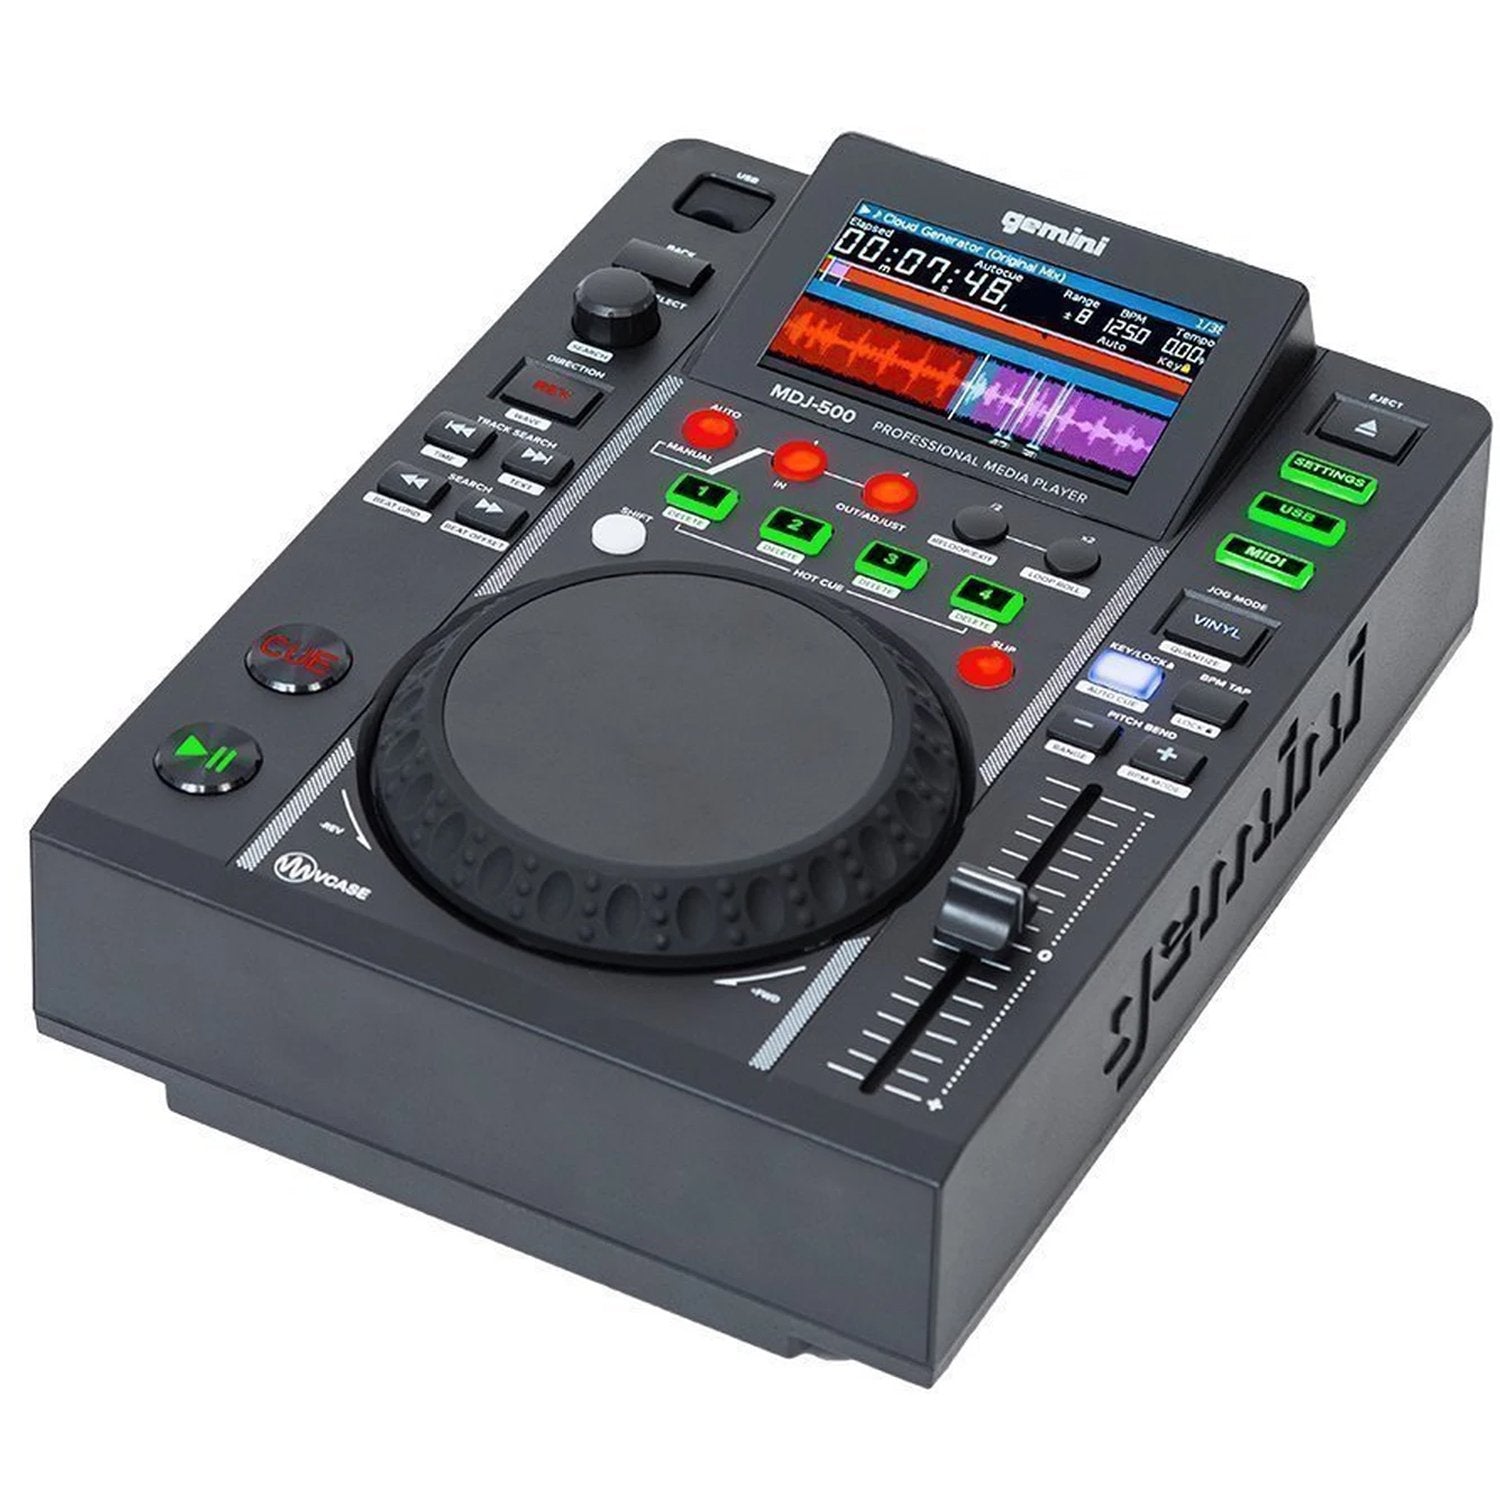 Gemini MDJ-500 Professional USB Media Player - DY Pro Audio